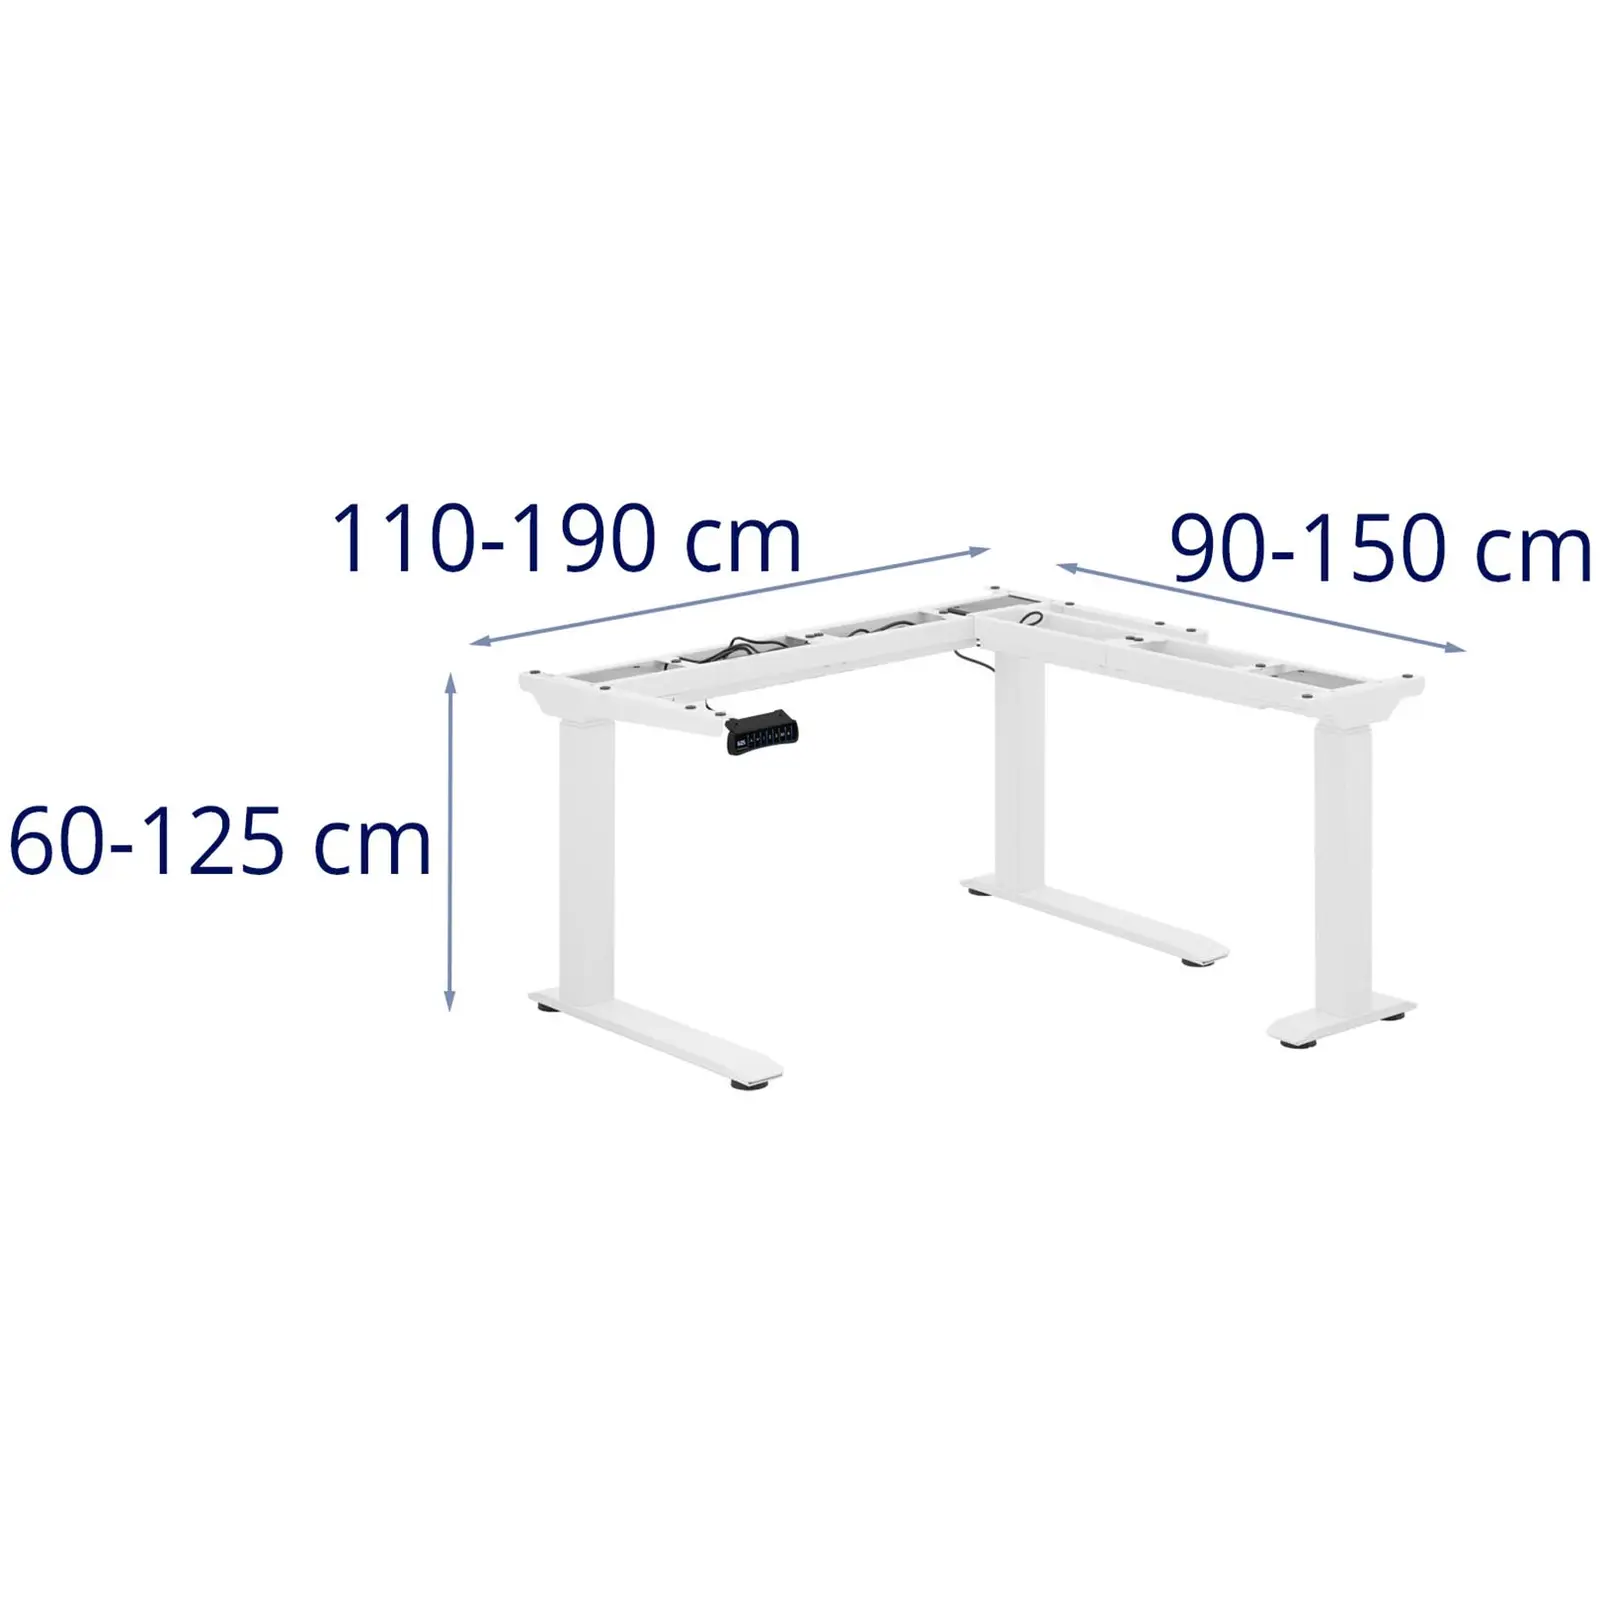 Kakkoslaatu Korkeussäädettävä työpöydän runko - korkeus: 60 - 125 cm - leveys: 110 - 190 cm / 90 - 150 cm